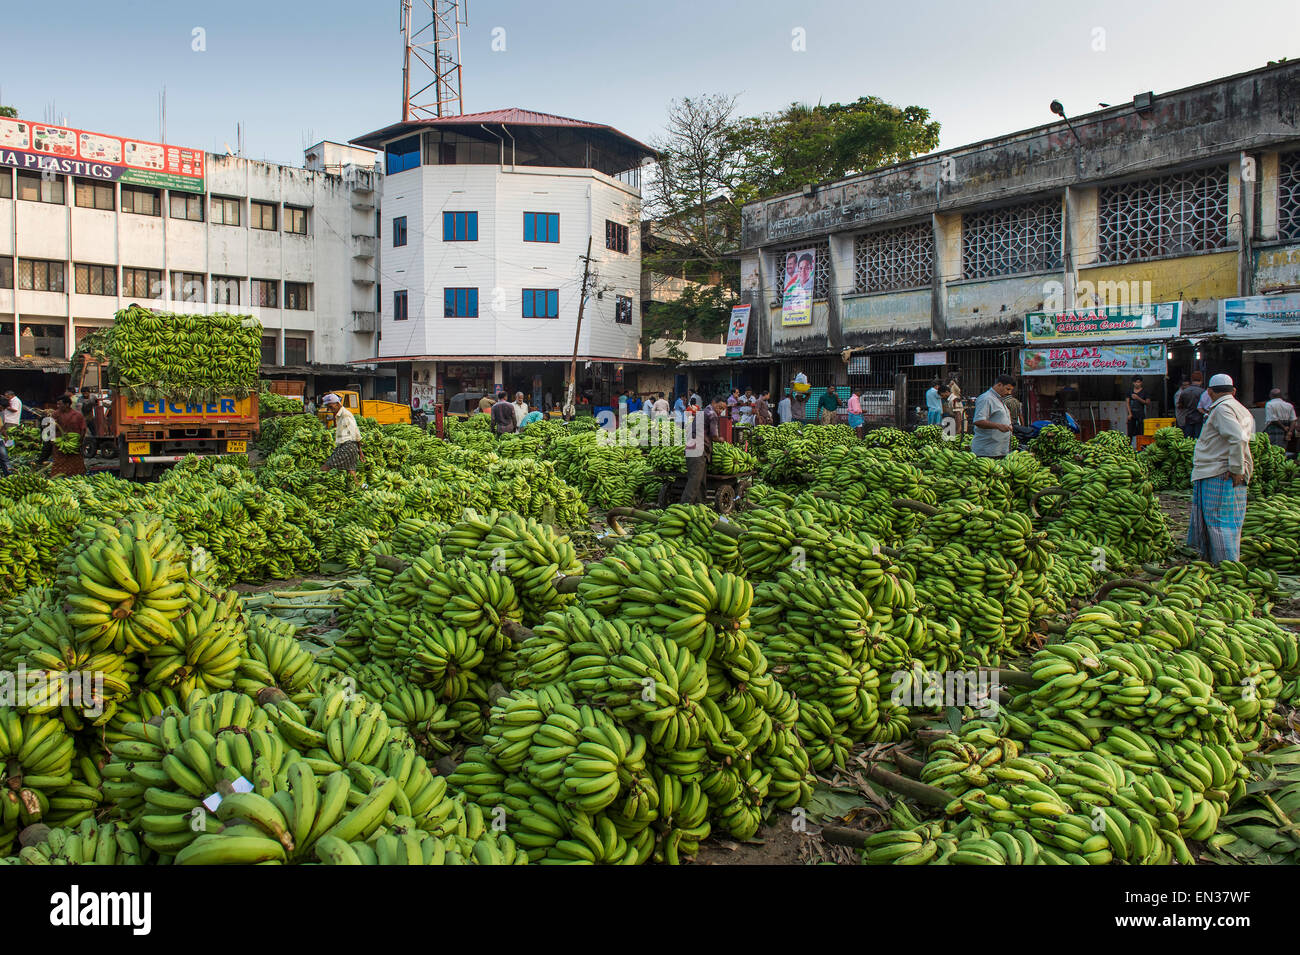 Le marché de la banane, Broadway Market, Ernakulum, Inde Banque D'Images